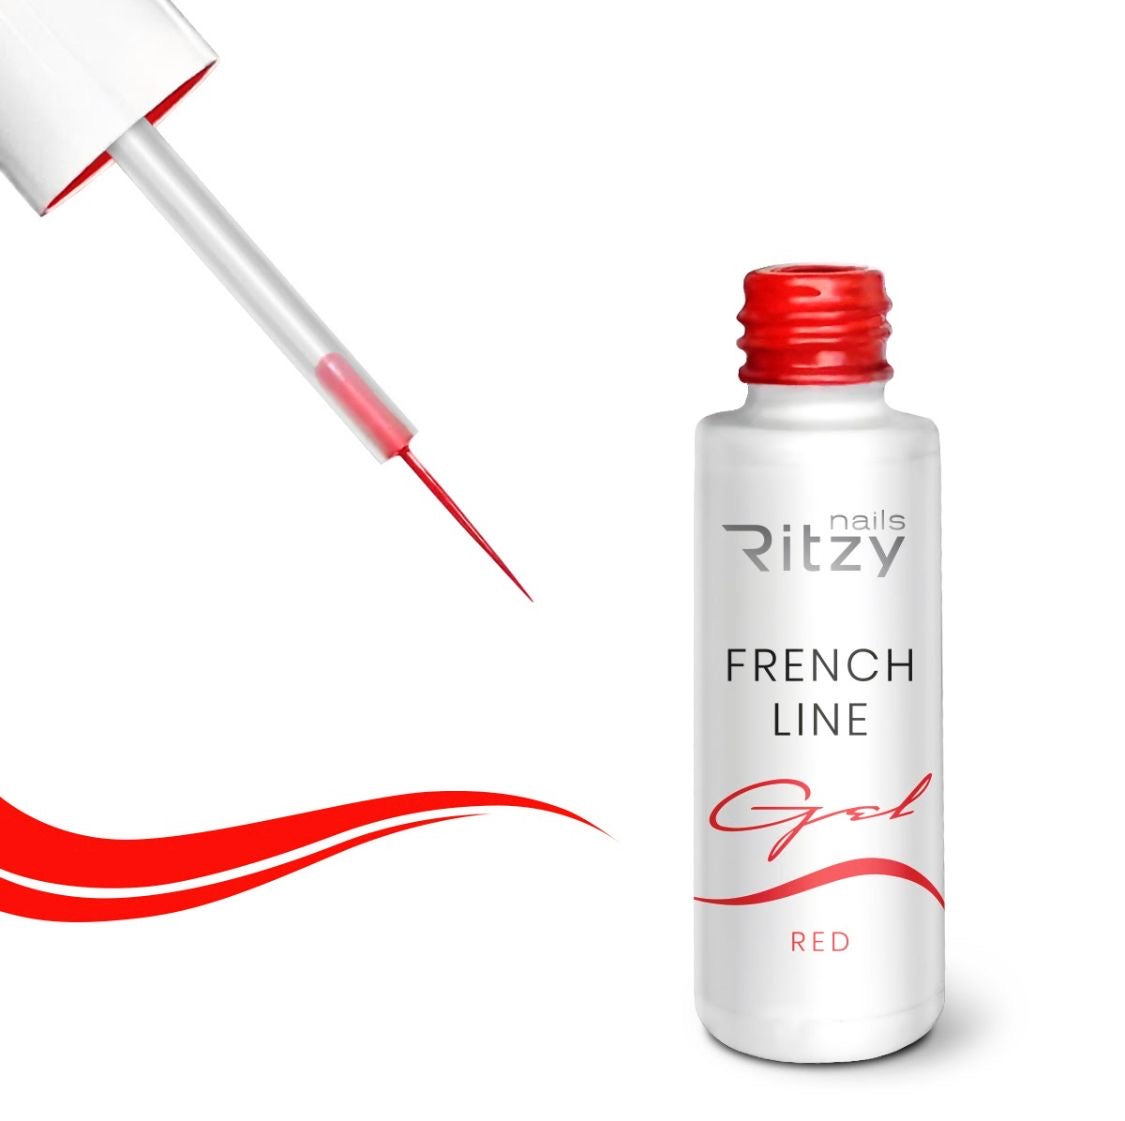 French Line gel polish.